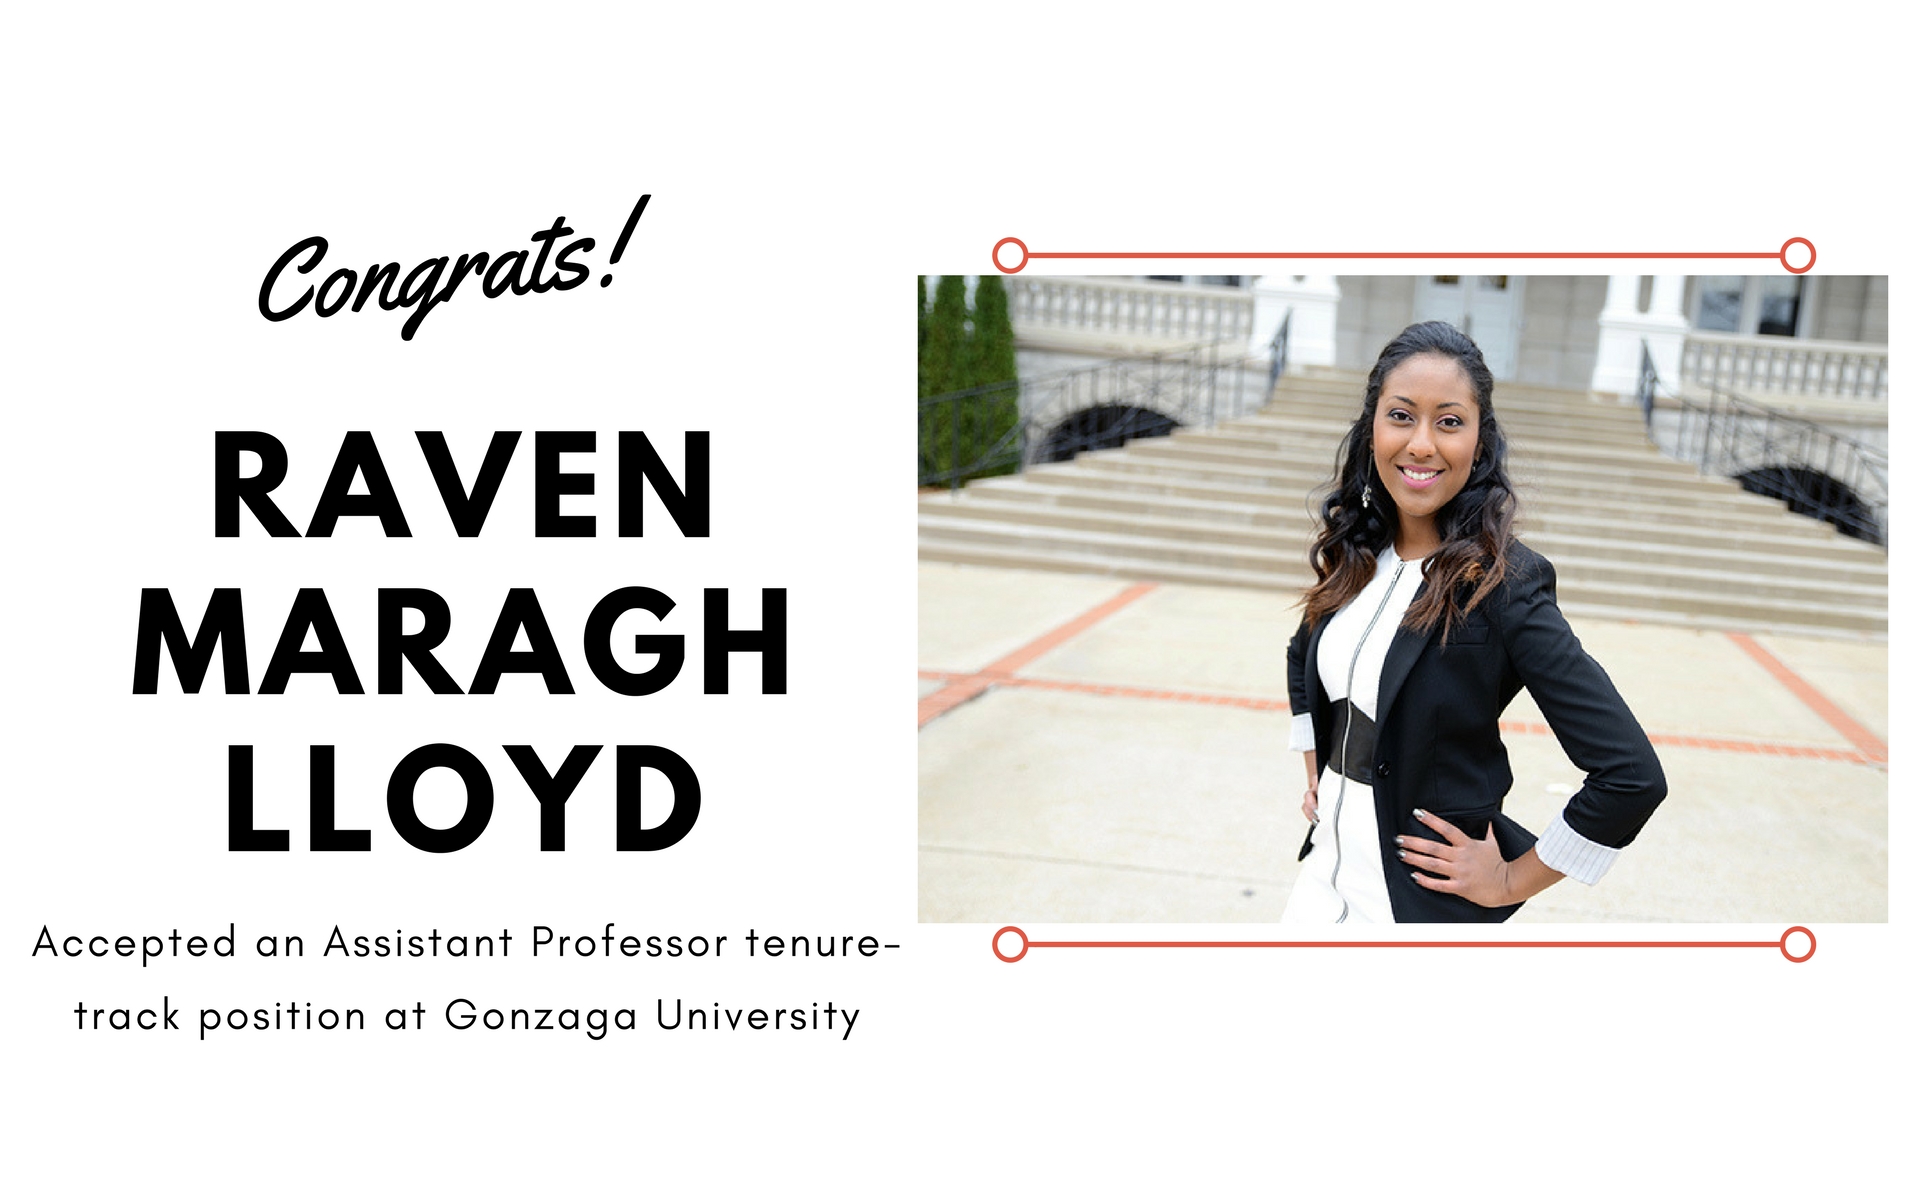 Congrats! Raven Maragh Lloyd Accepted an Assistant Professor tenure-track position at Gonzaga University